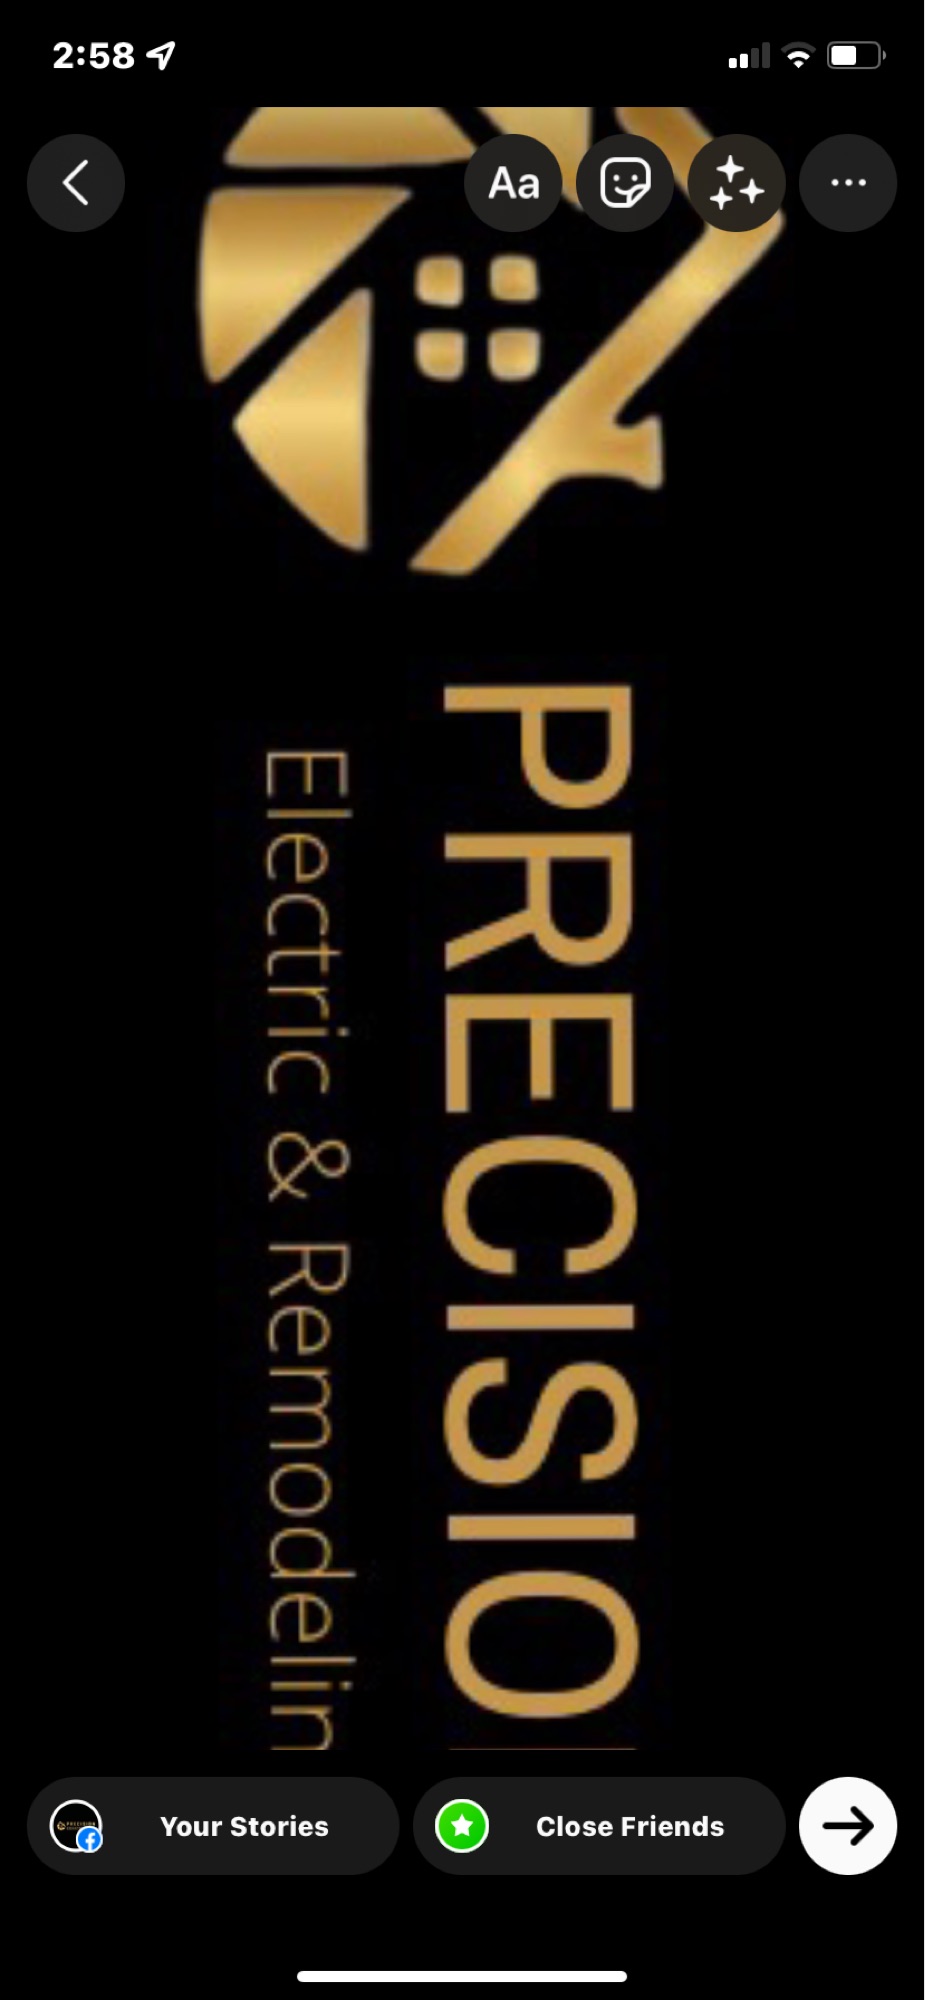 Precision Handyman Services Logo